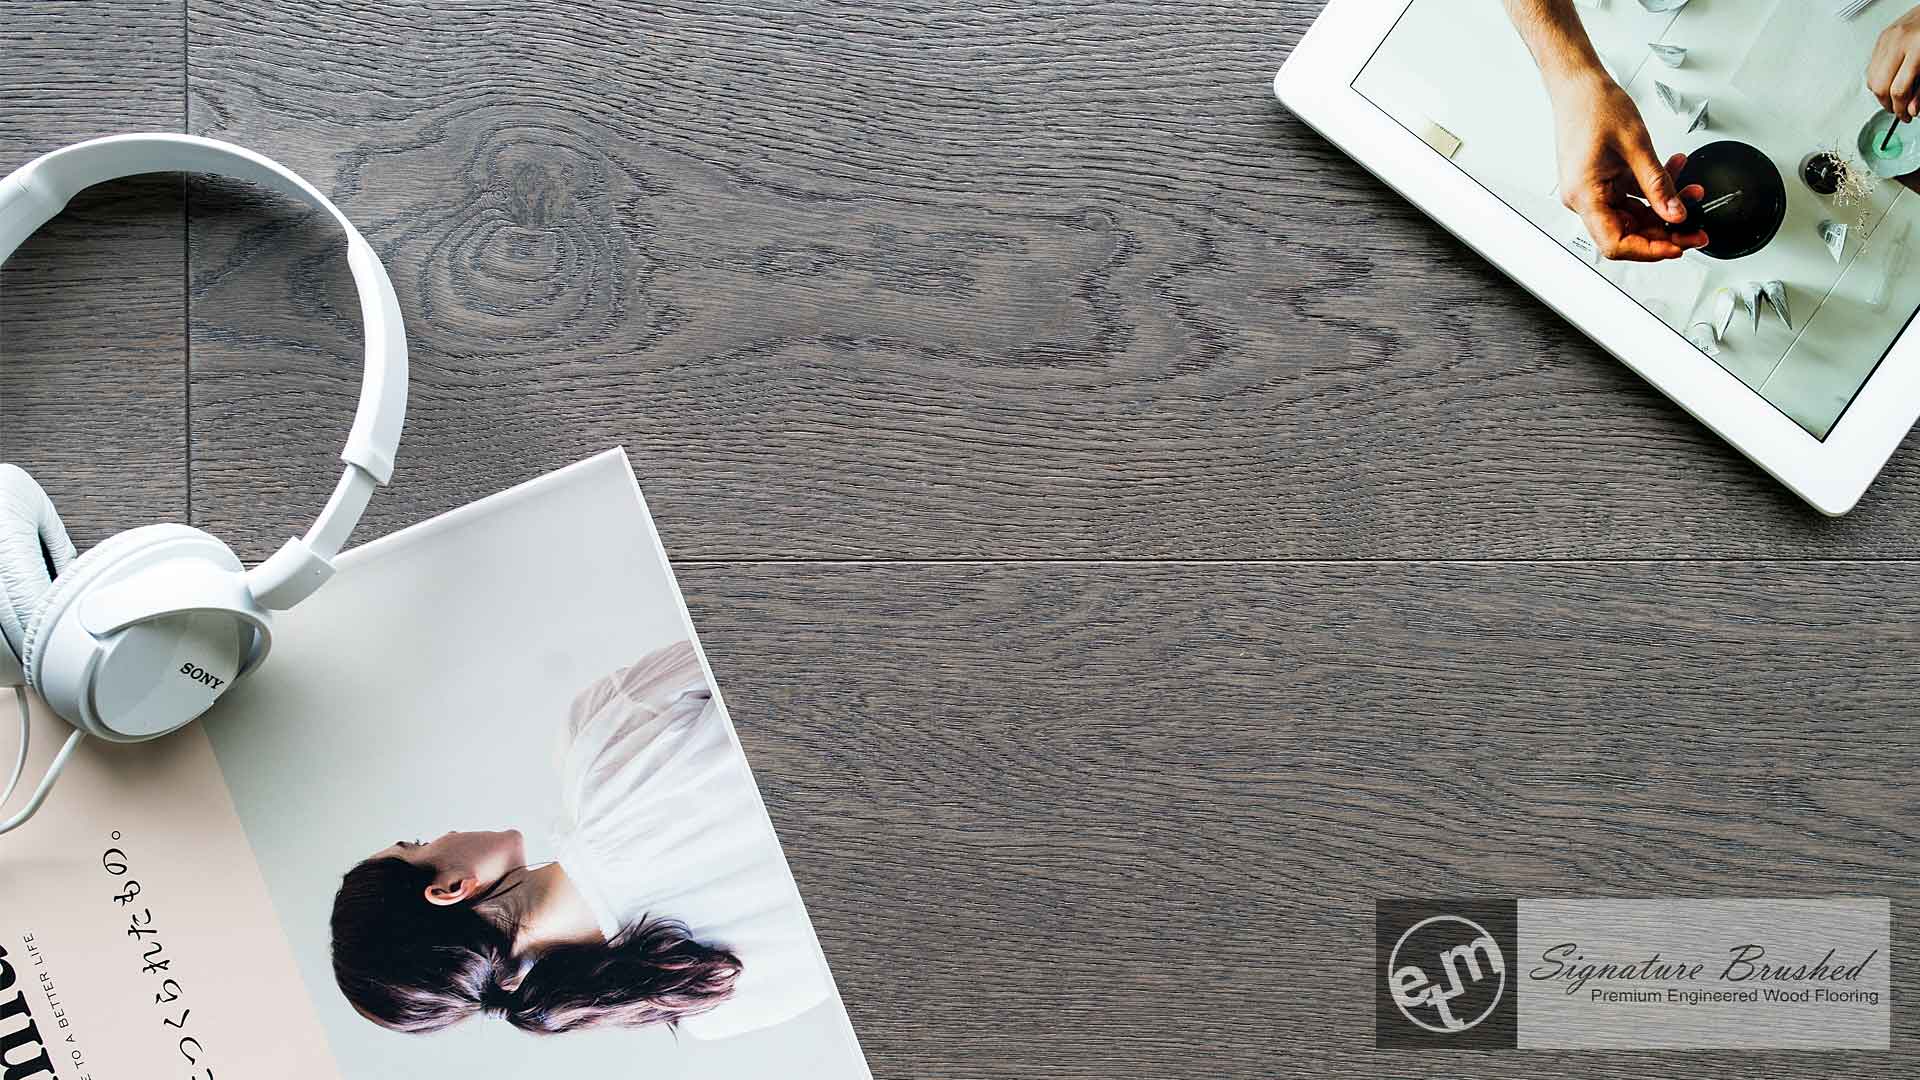 ETM Signature Brushed Engineered Hardwood Flooring